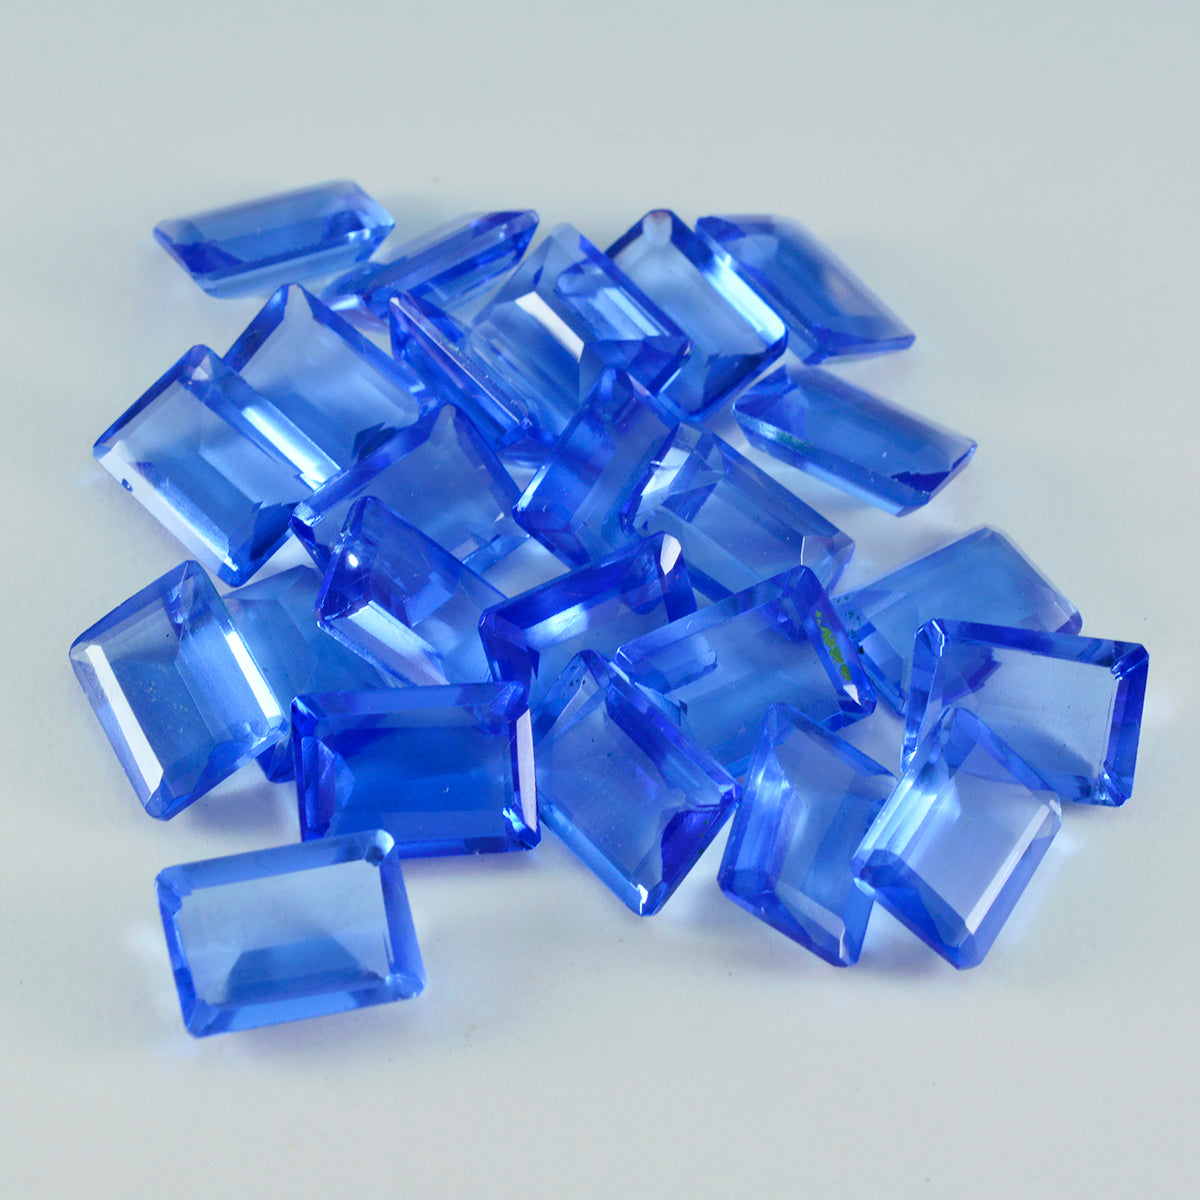 riyogems 1 шт. синий сапфир cz ограненный 6x8 мм восьмиугольной формы красивый качественный свободный драгоценный камень